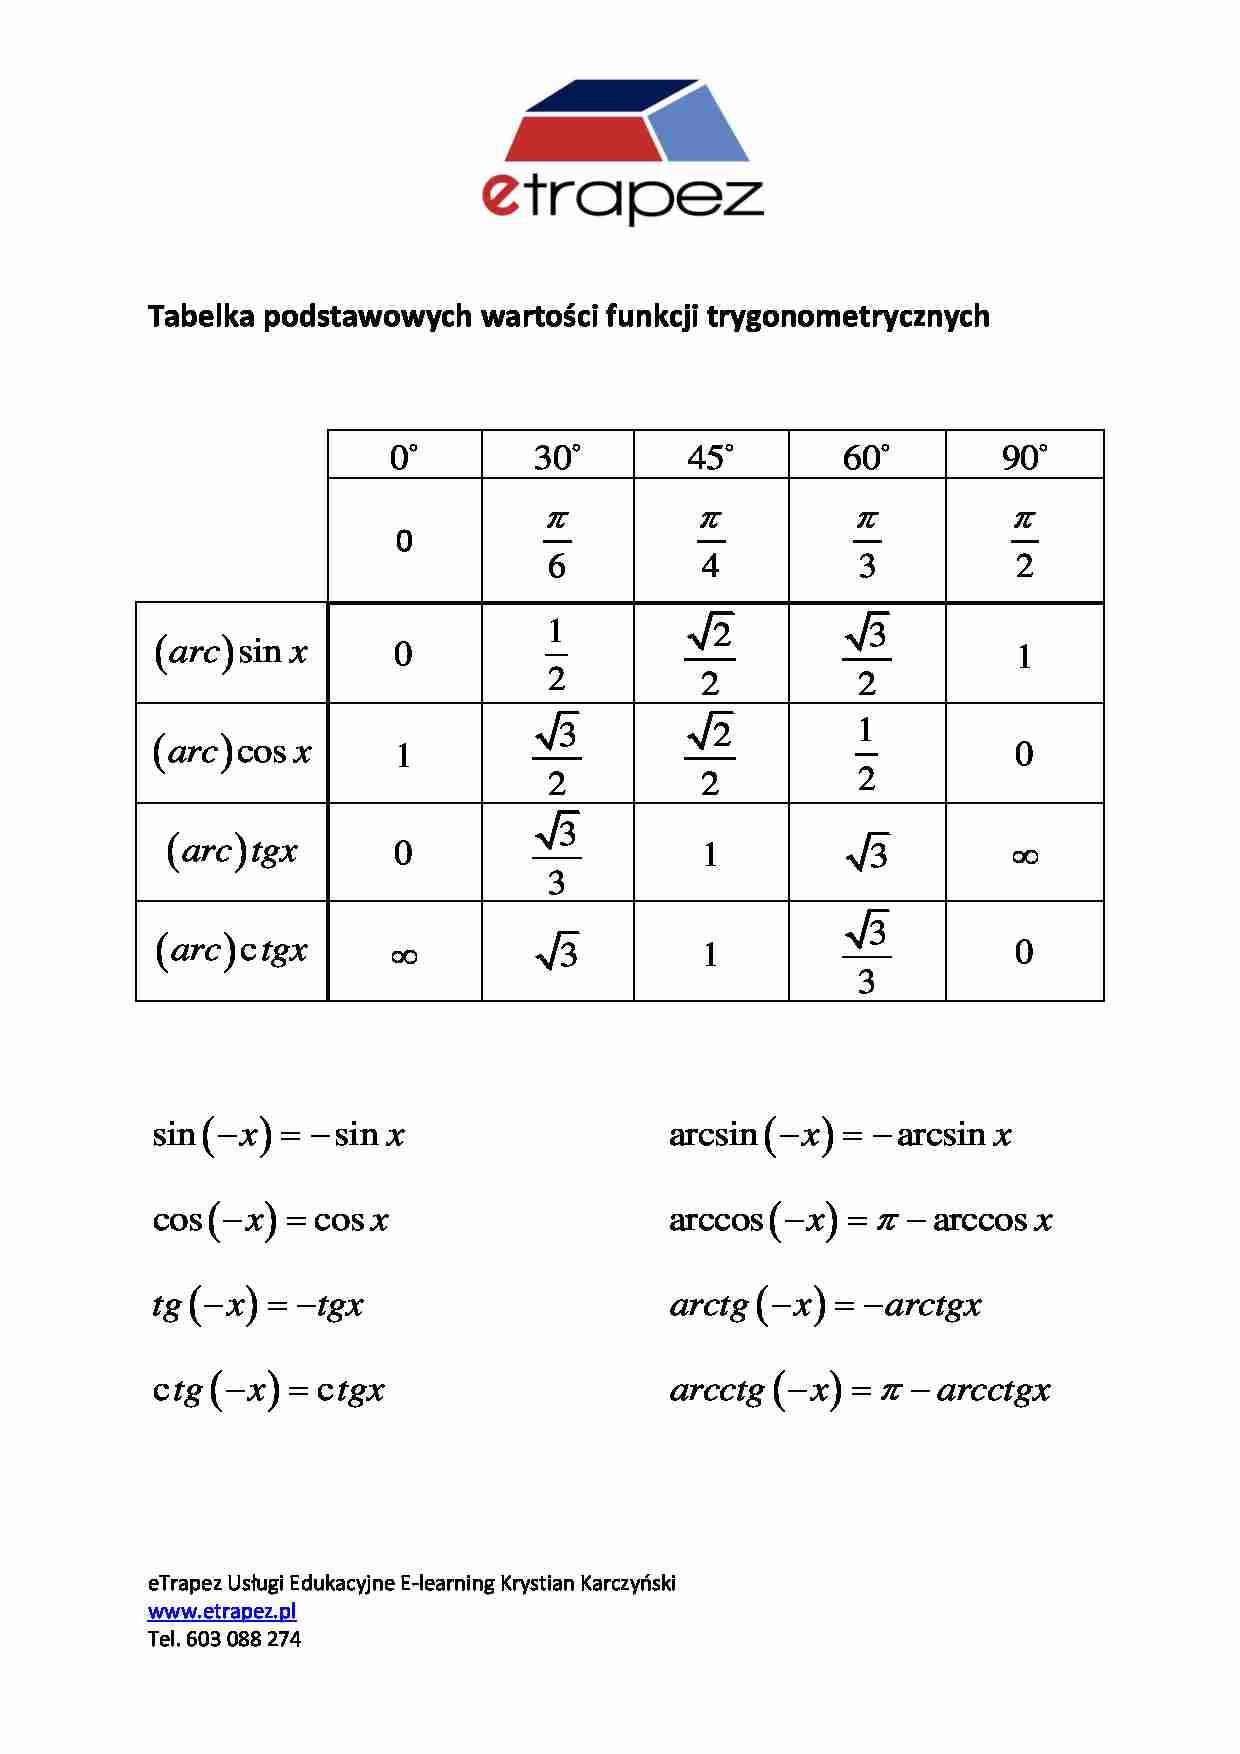 Tabelka podstaw wartości trygonometrycznych - strona 1